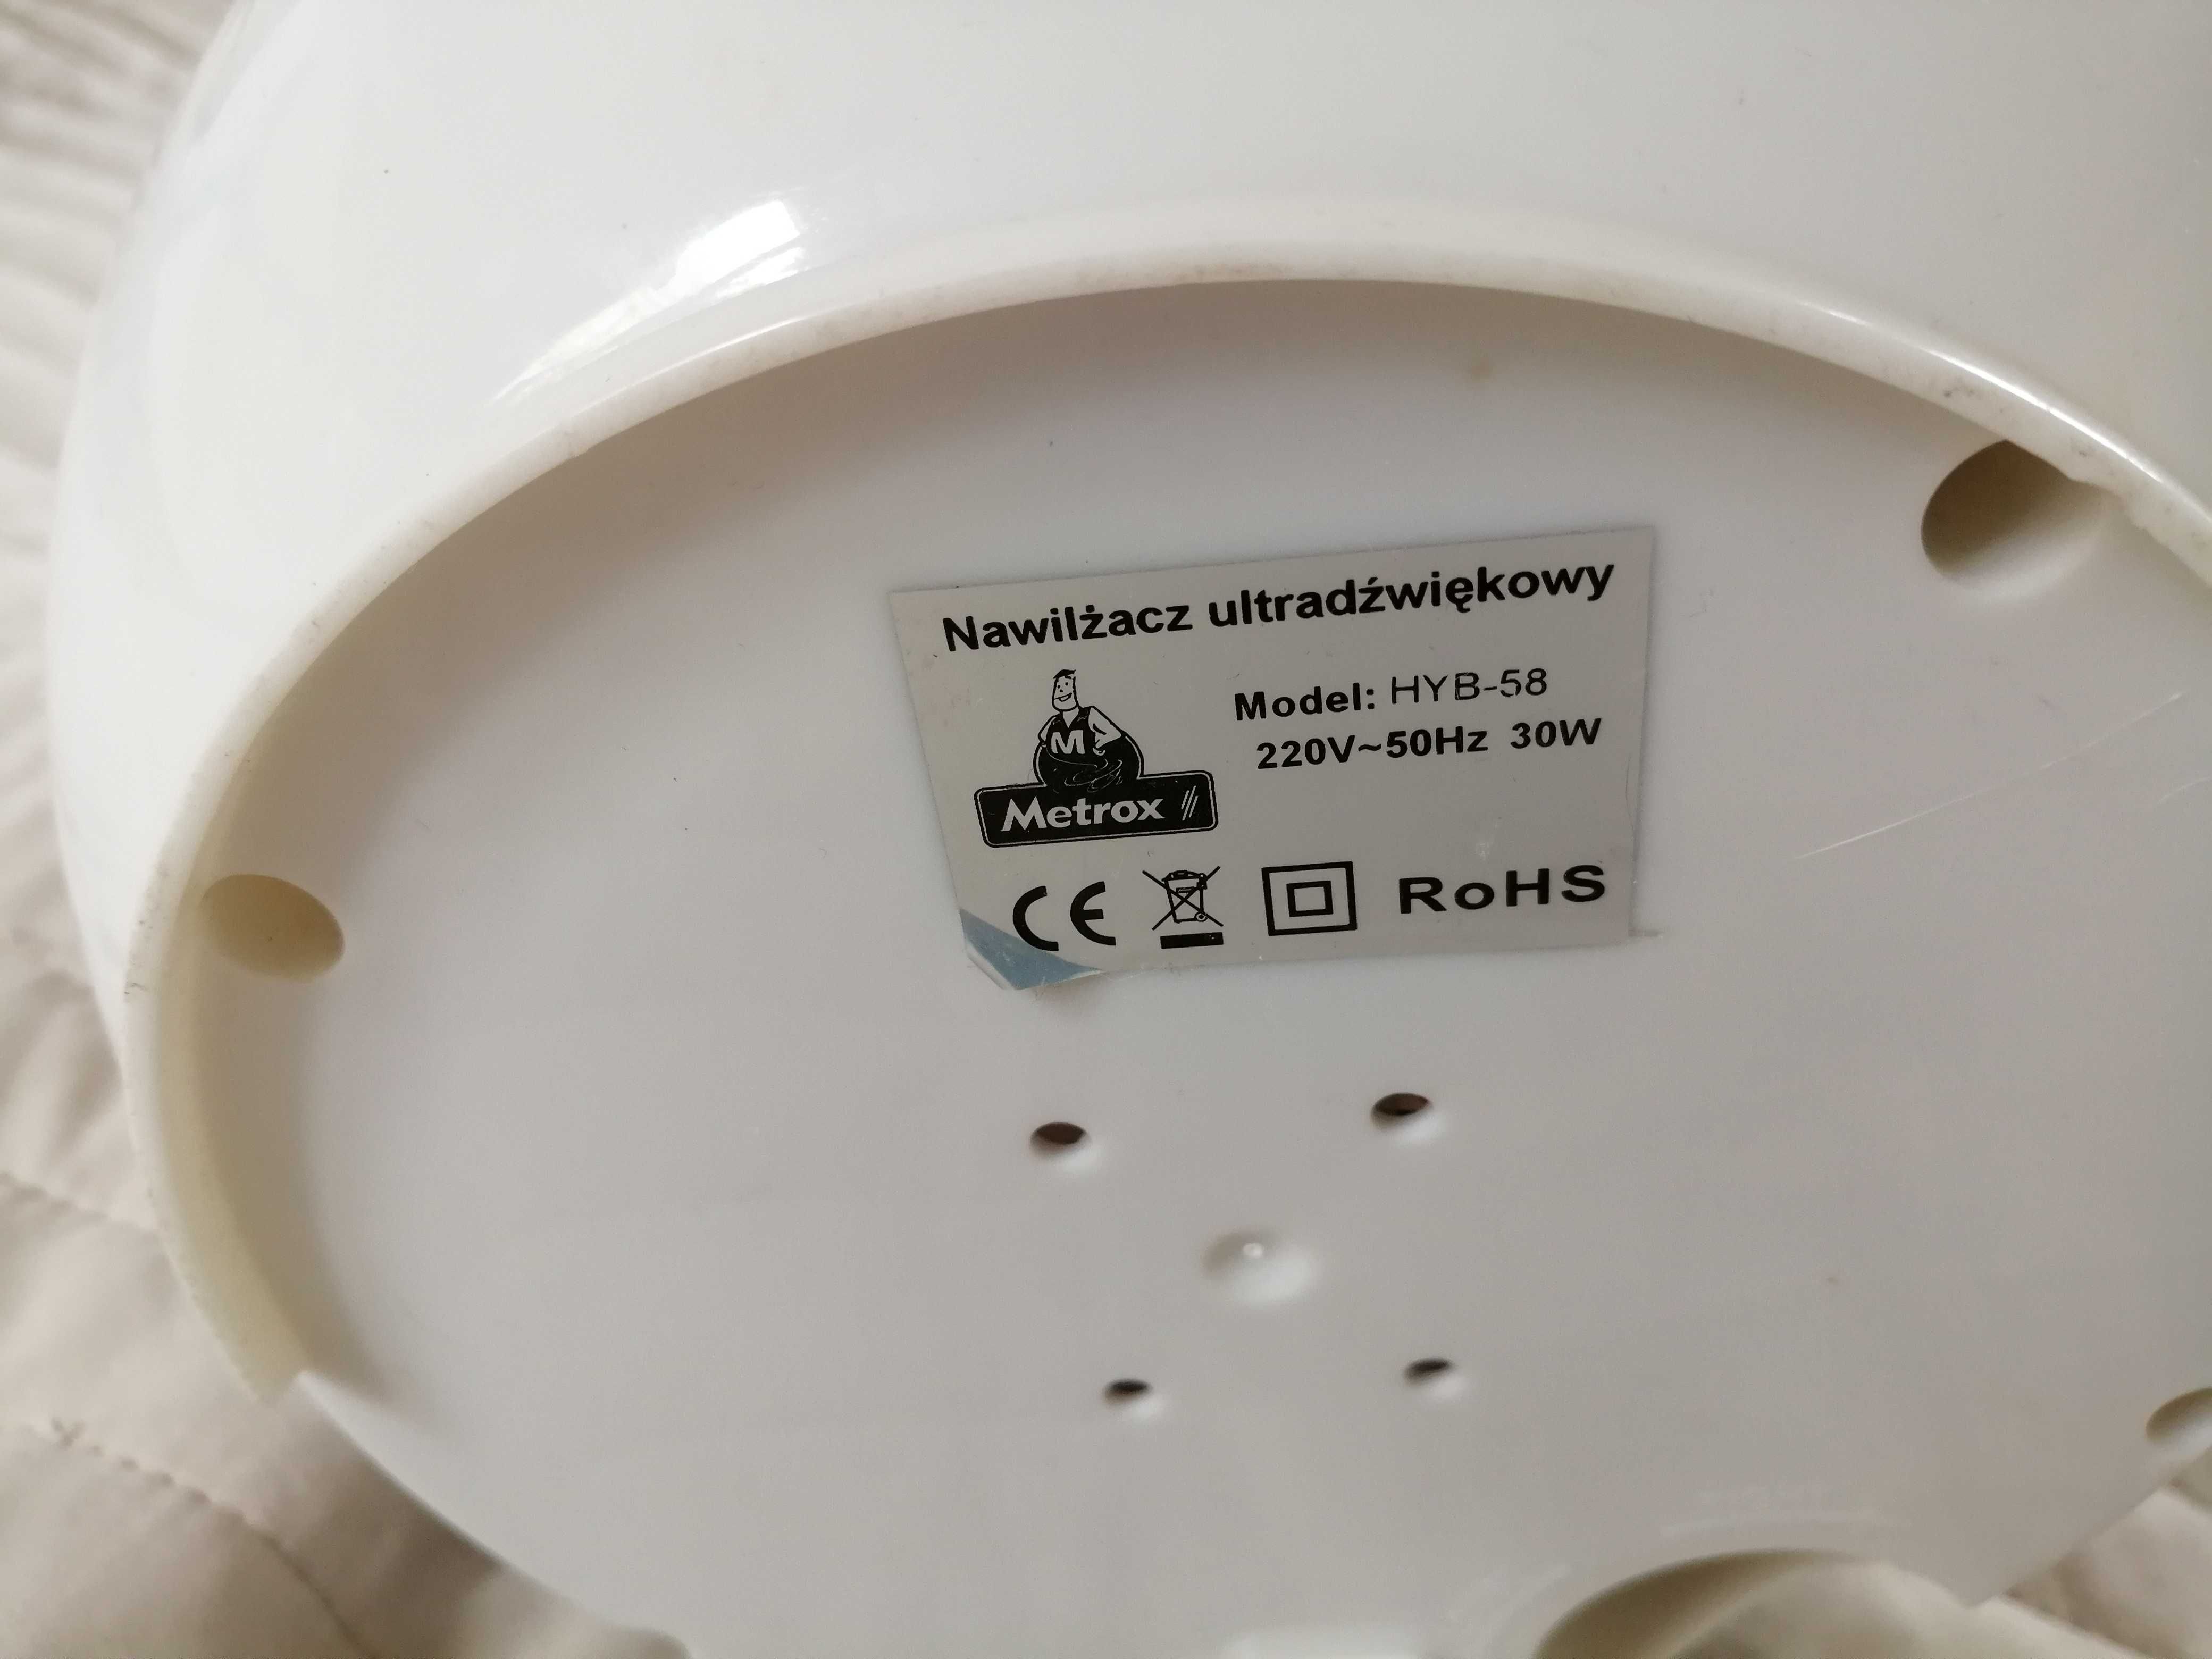 Ultradźwiękowy nawilżacz powietrza Metrox